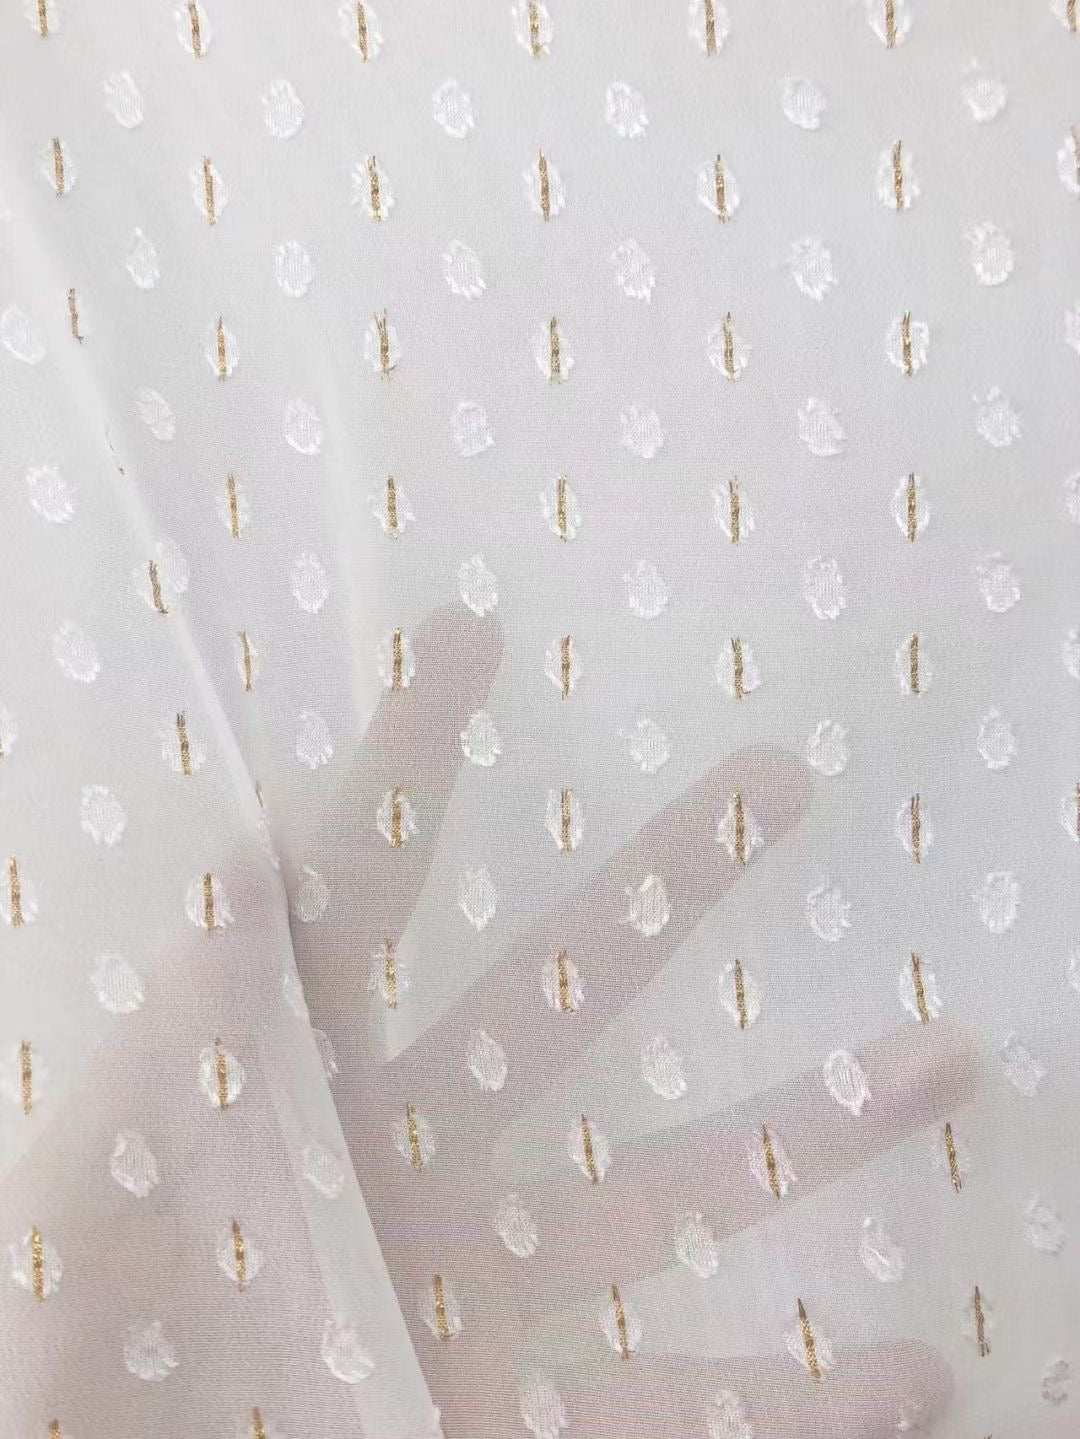 100% Polyester Base Fabric For Printing--With Metallic Jacquard - Natasha Fabric